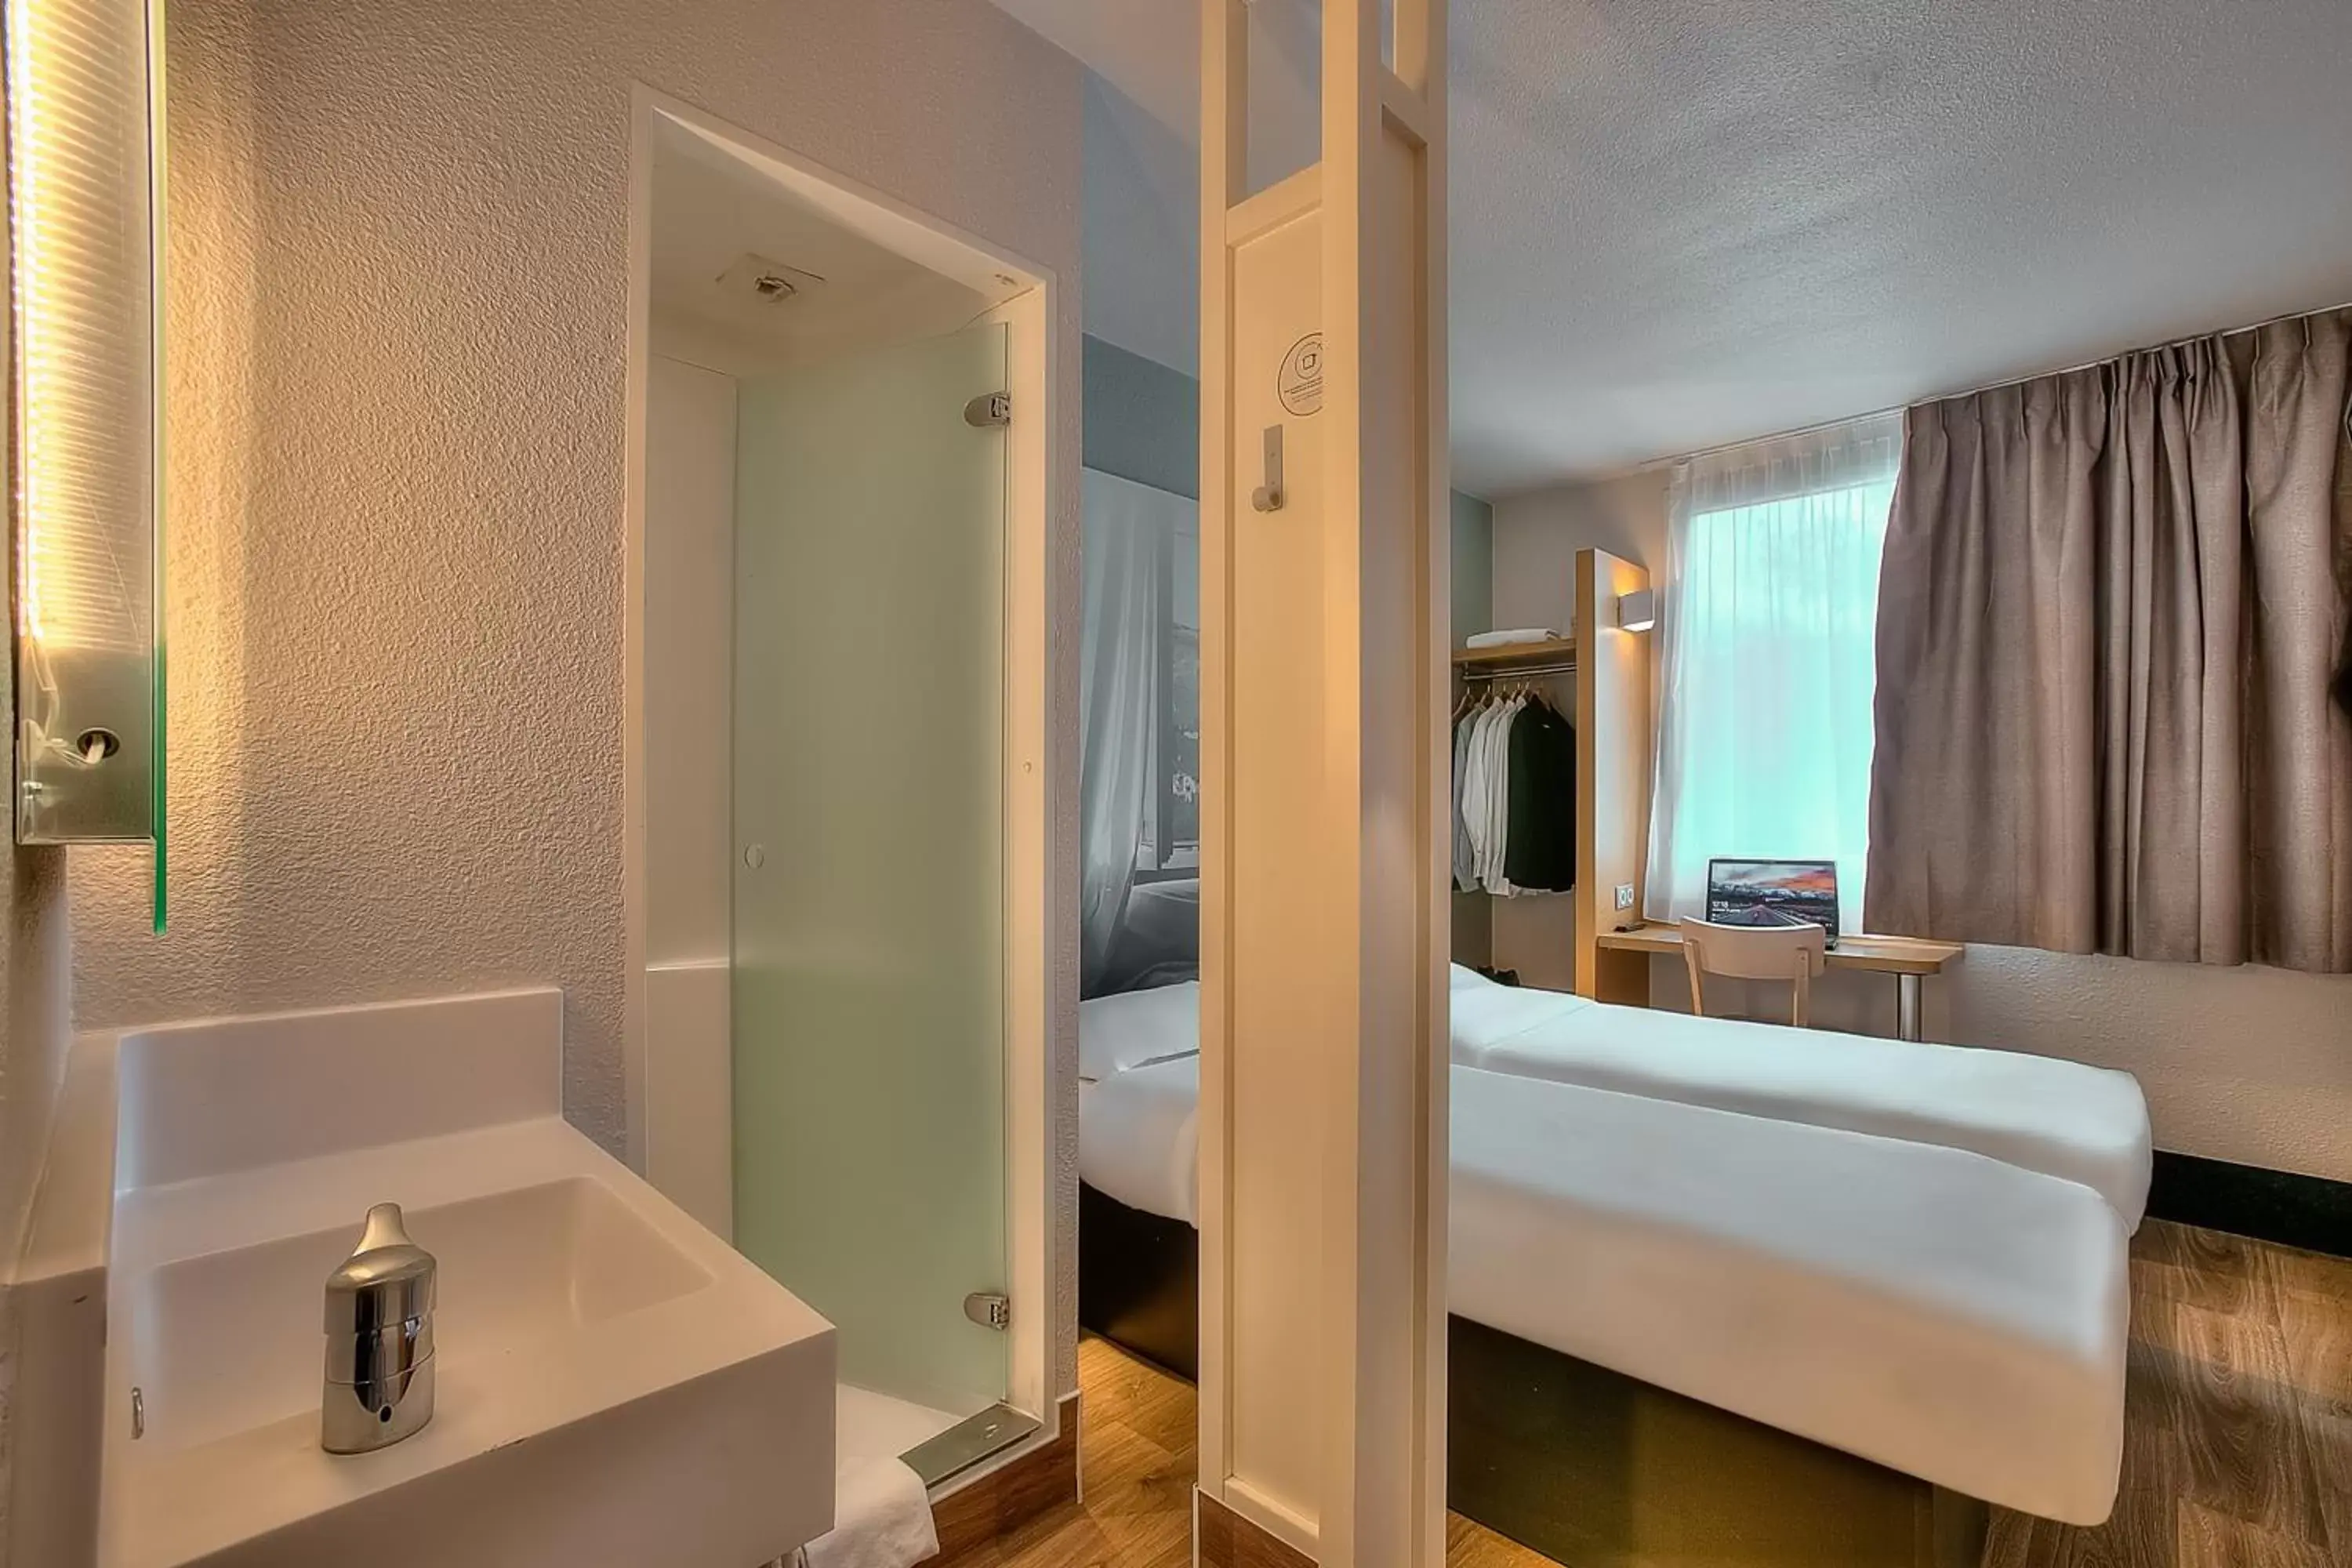 Bedroom, Bathroom in B&B HOTEL Antibes Sophia Antipolis